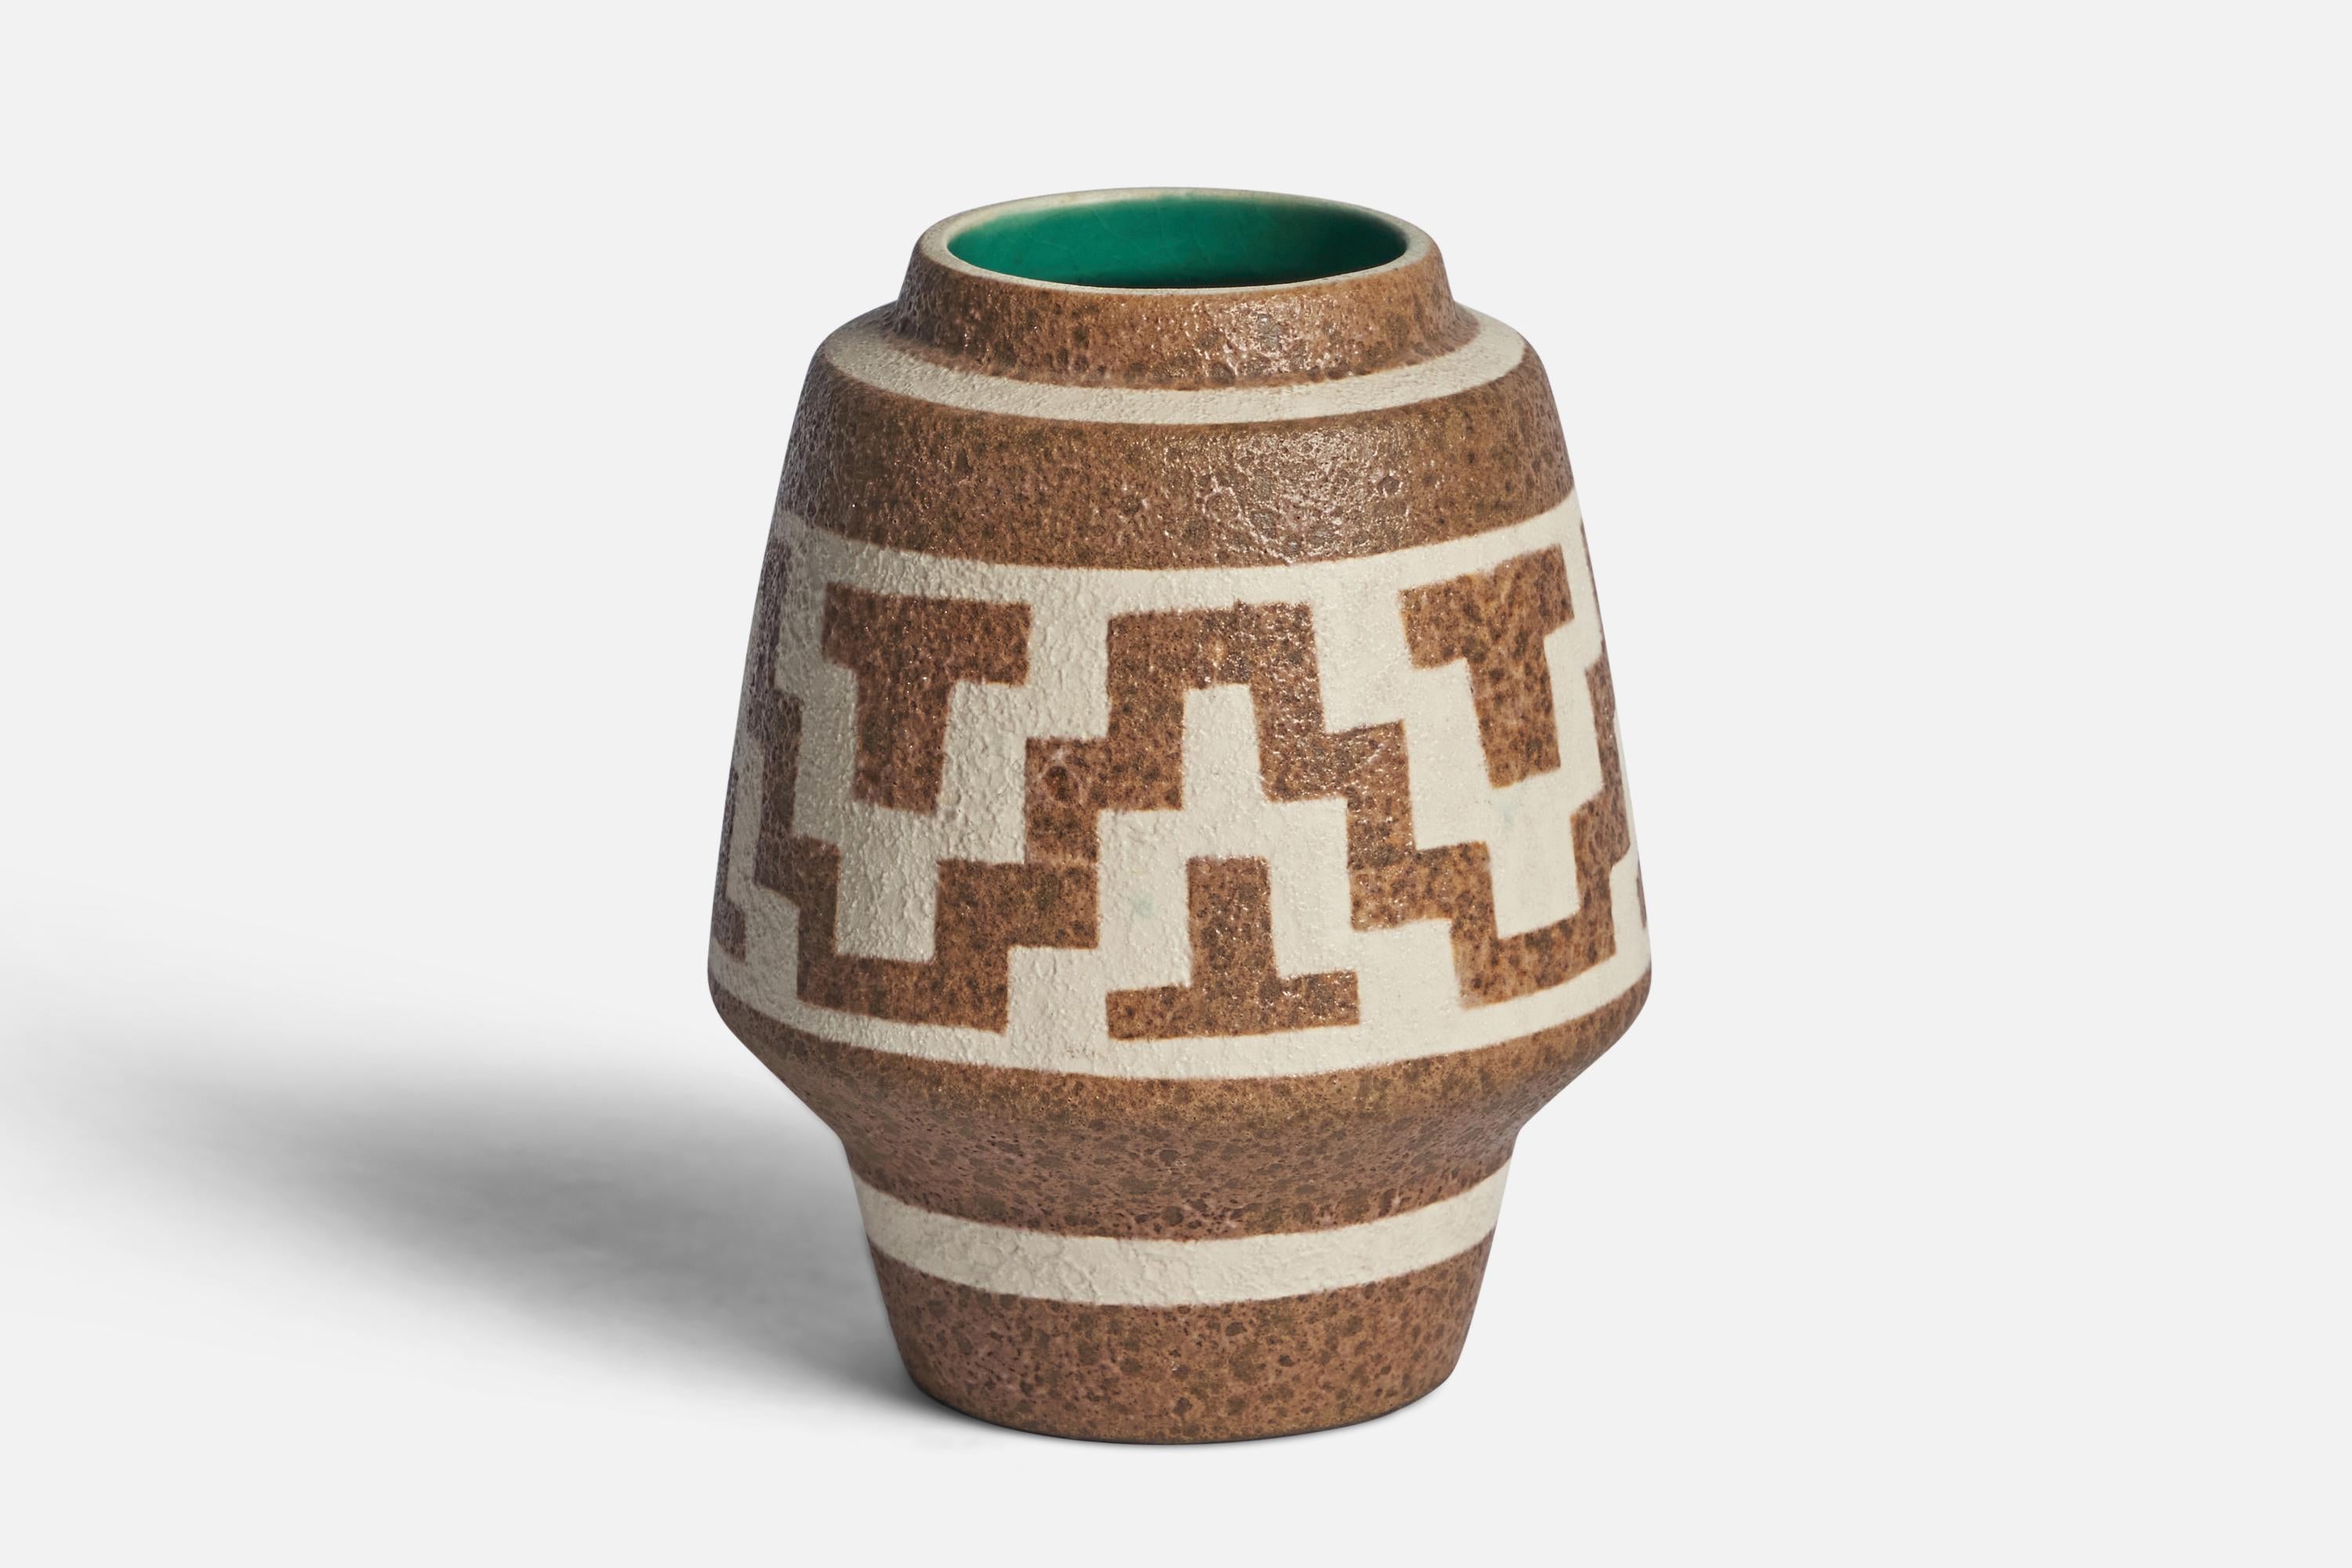 Vase en céramique marron, blanc cassé et vert glacé, conçu et produit par Gmundner Keramik, Autriche, c.I.C.